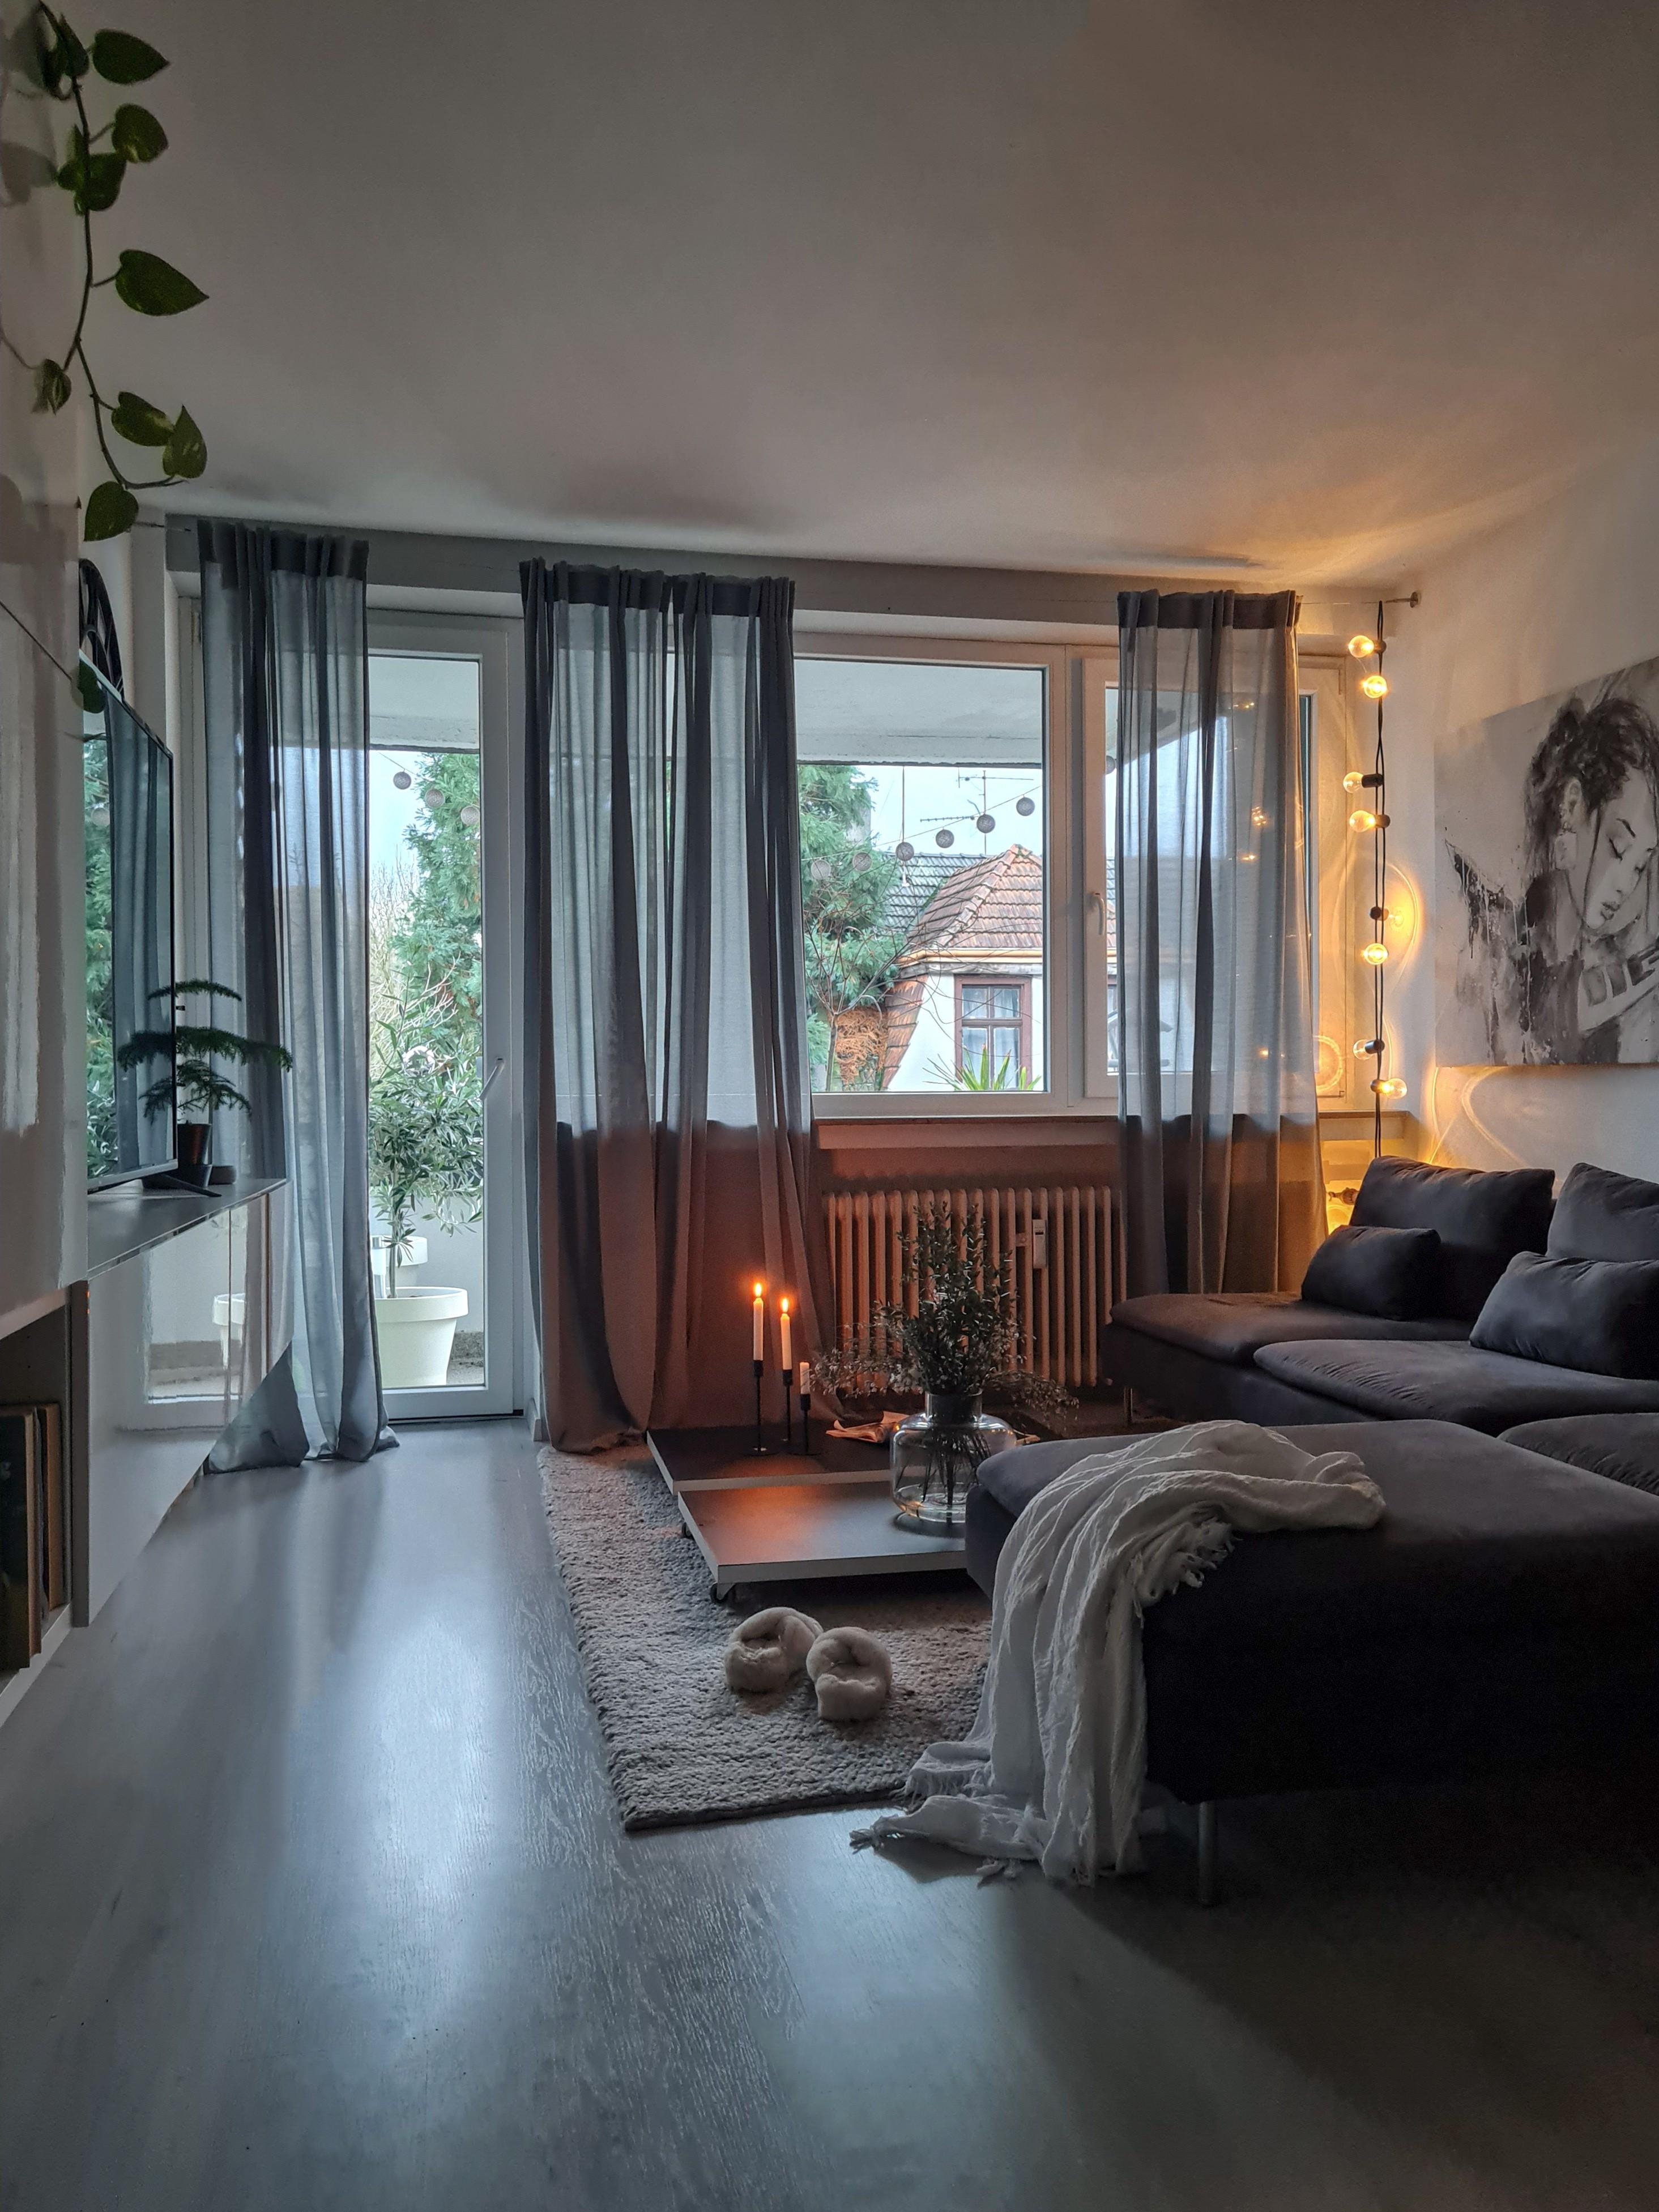 Macht es euch gemütlich 🤍✌
#livingroominspo #wohnzimmer #Interieur #wintermotiv